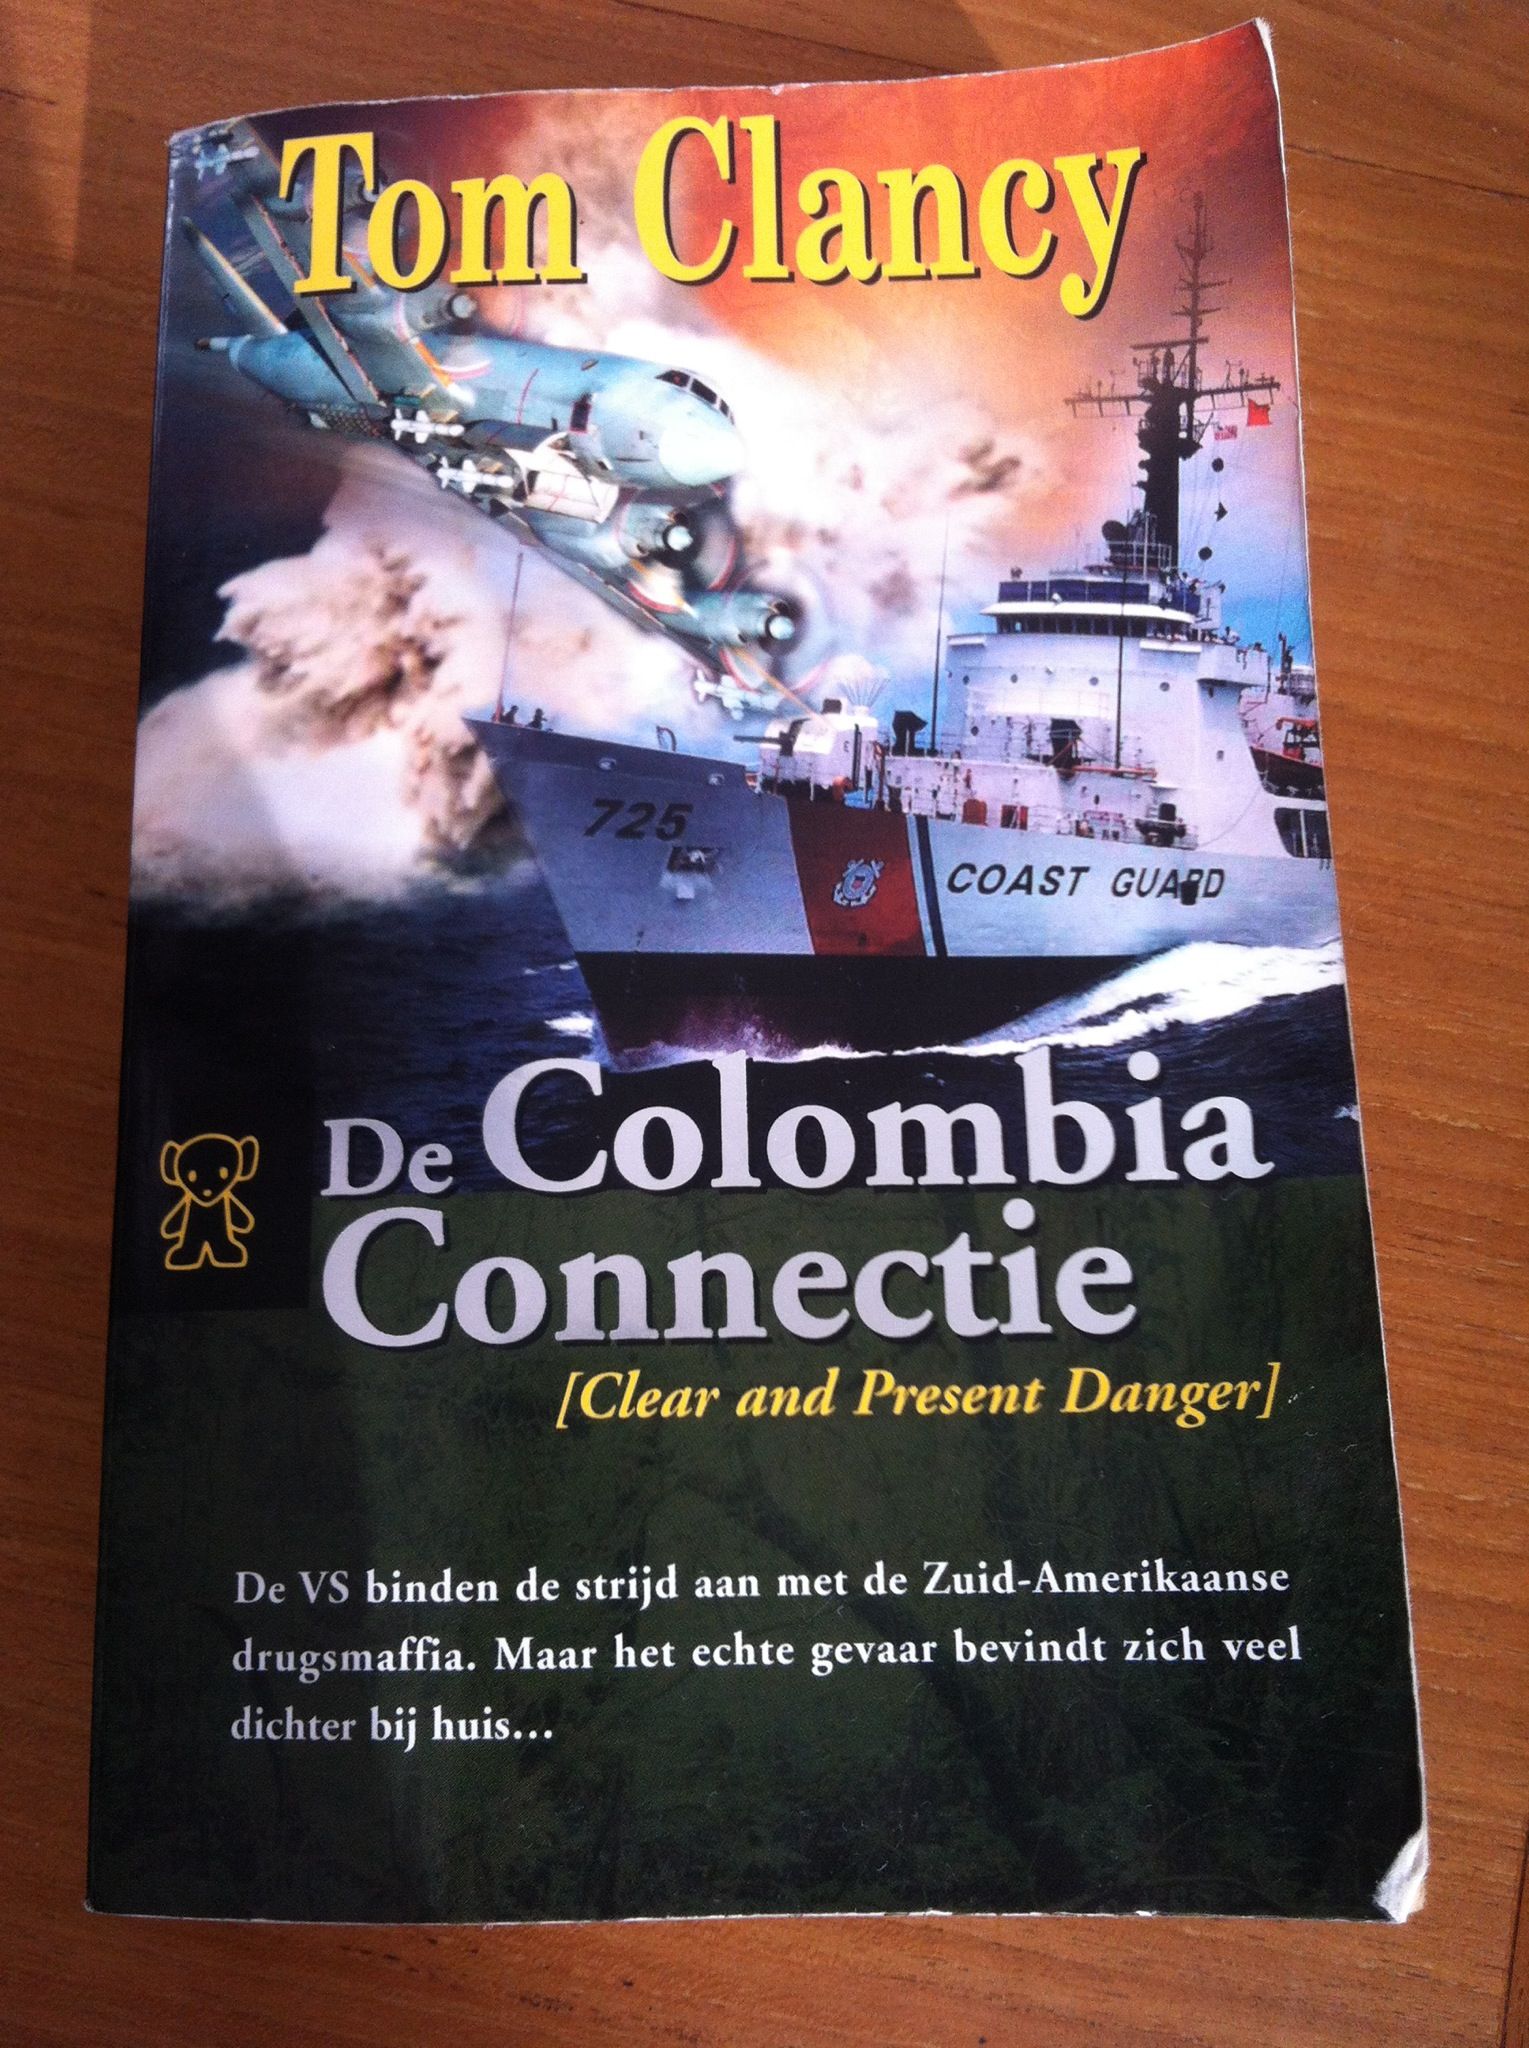 Columbia connectie